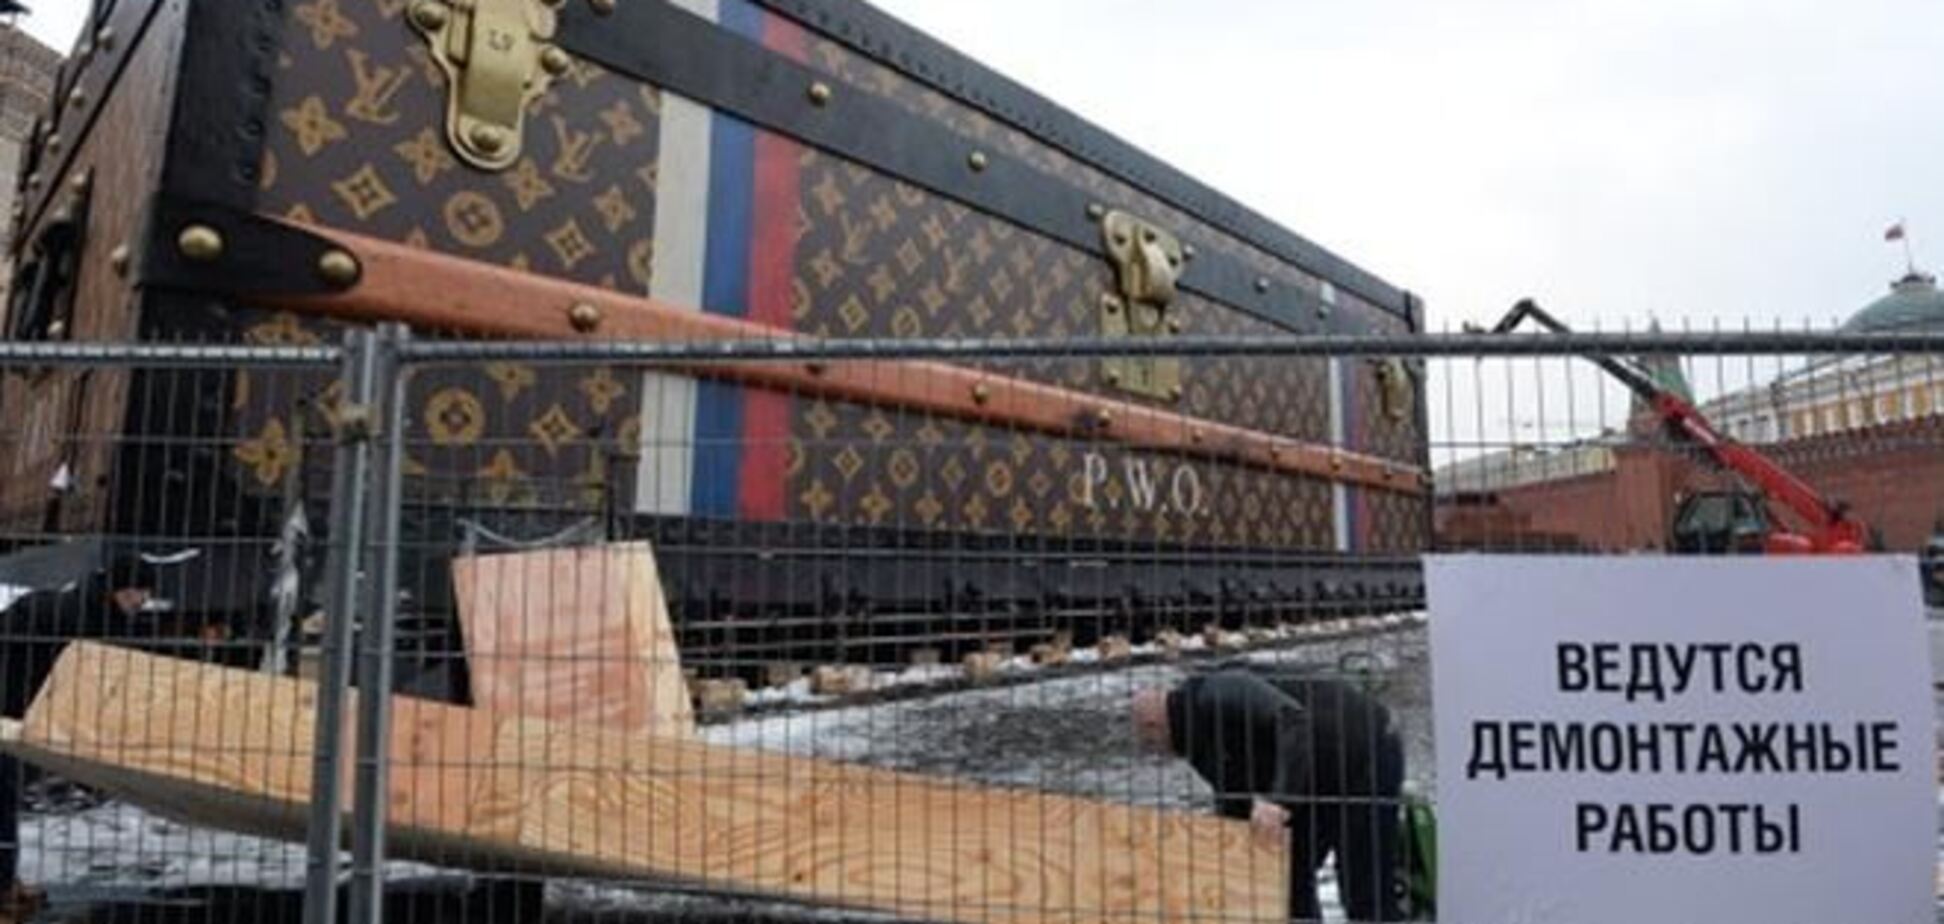 Выставка-чемодан Louis Vuitton в Москве переедет на другую площадь